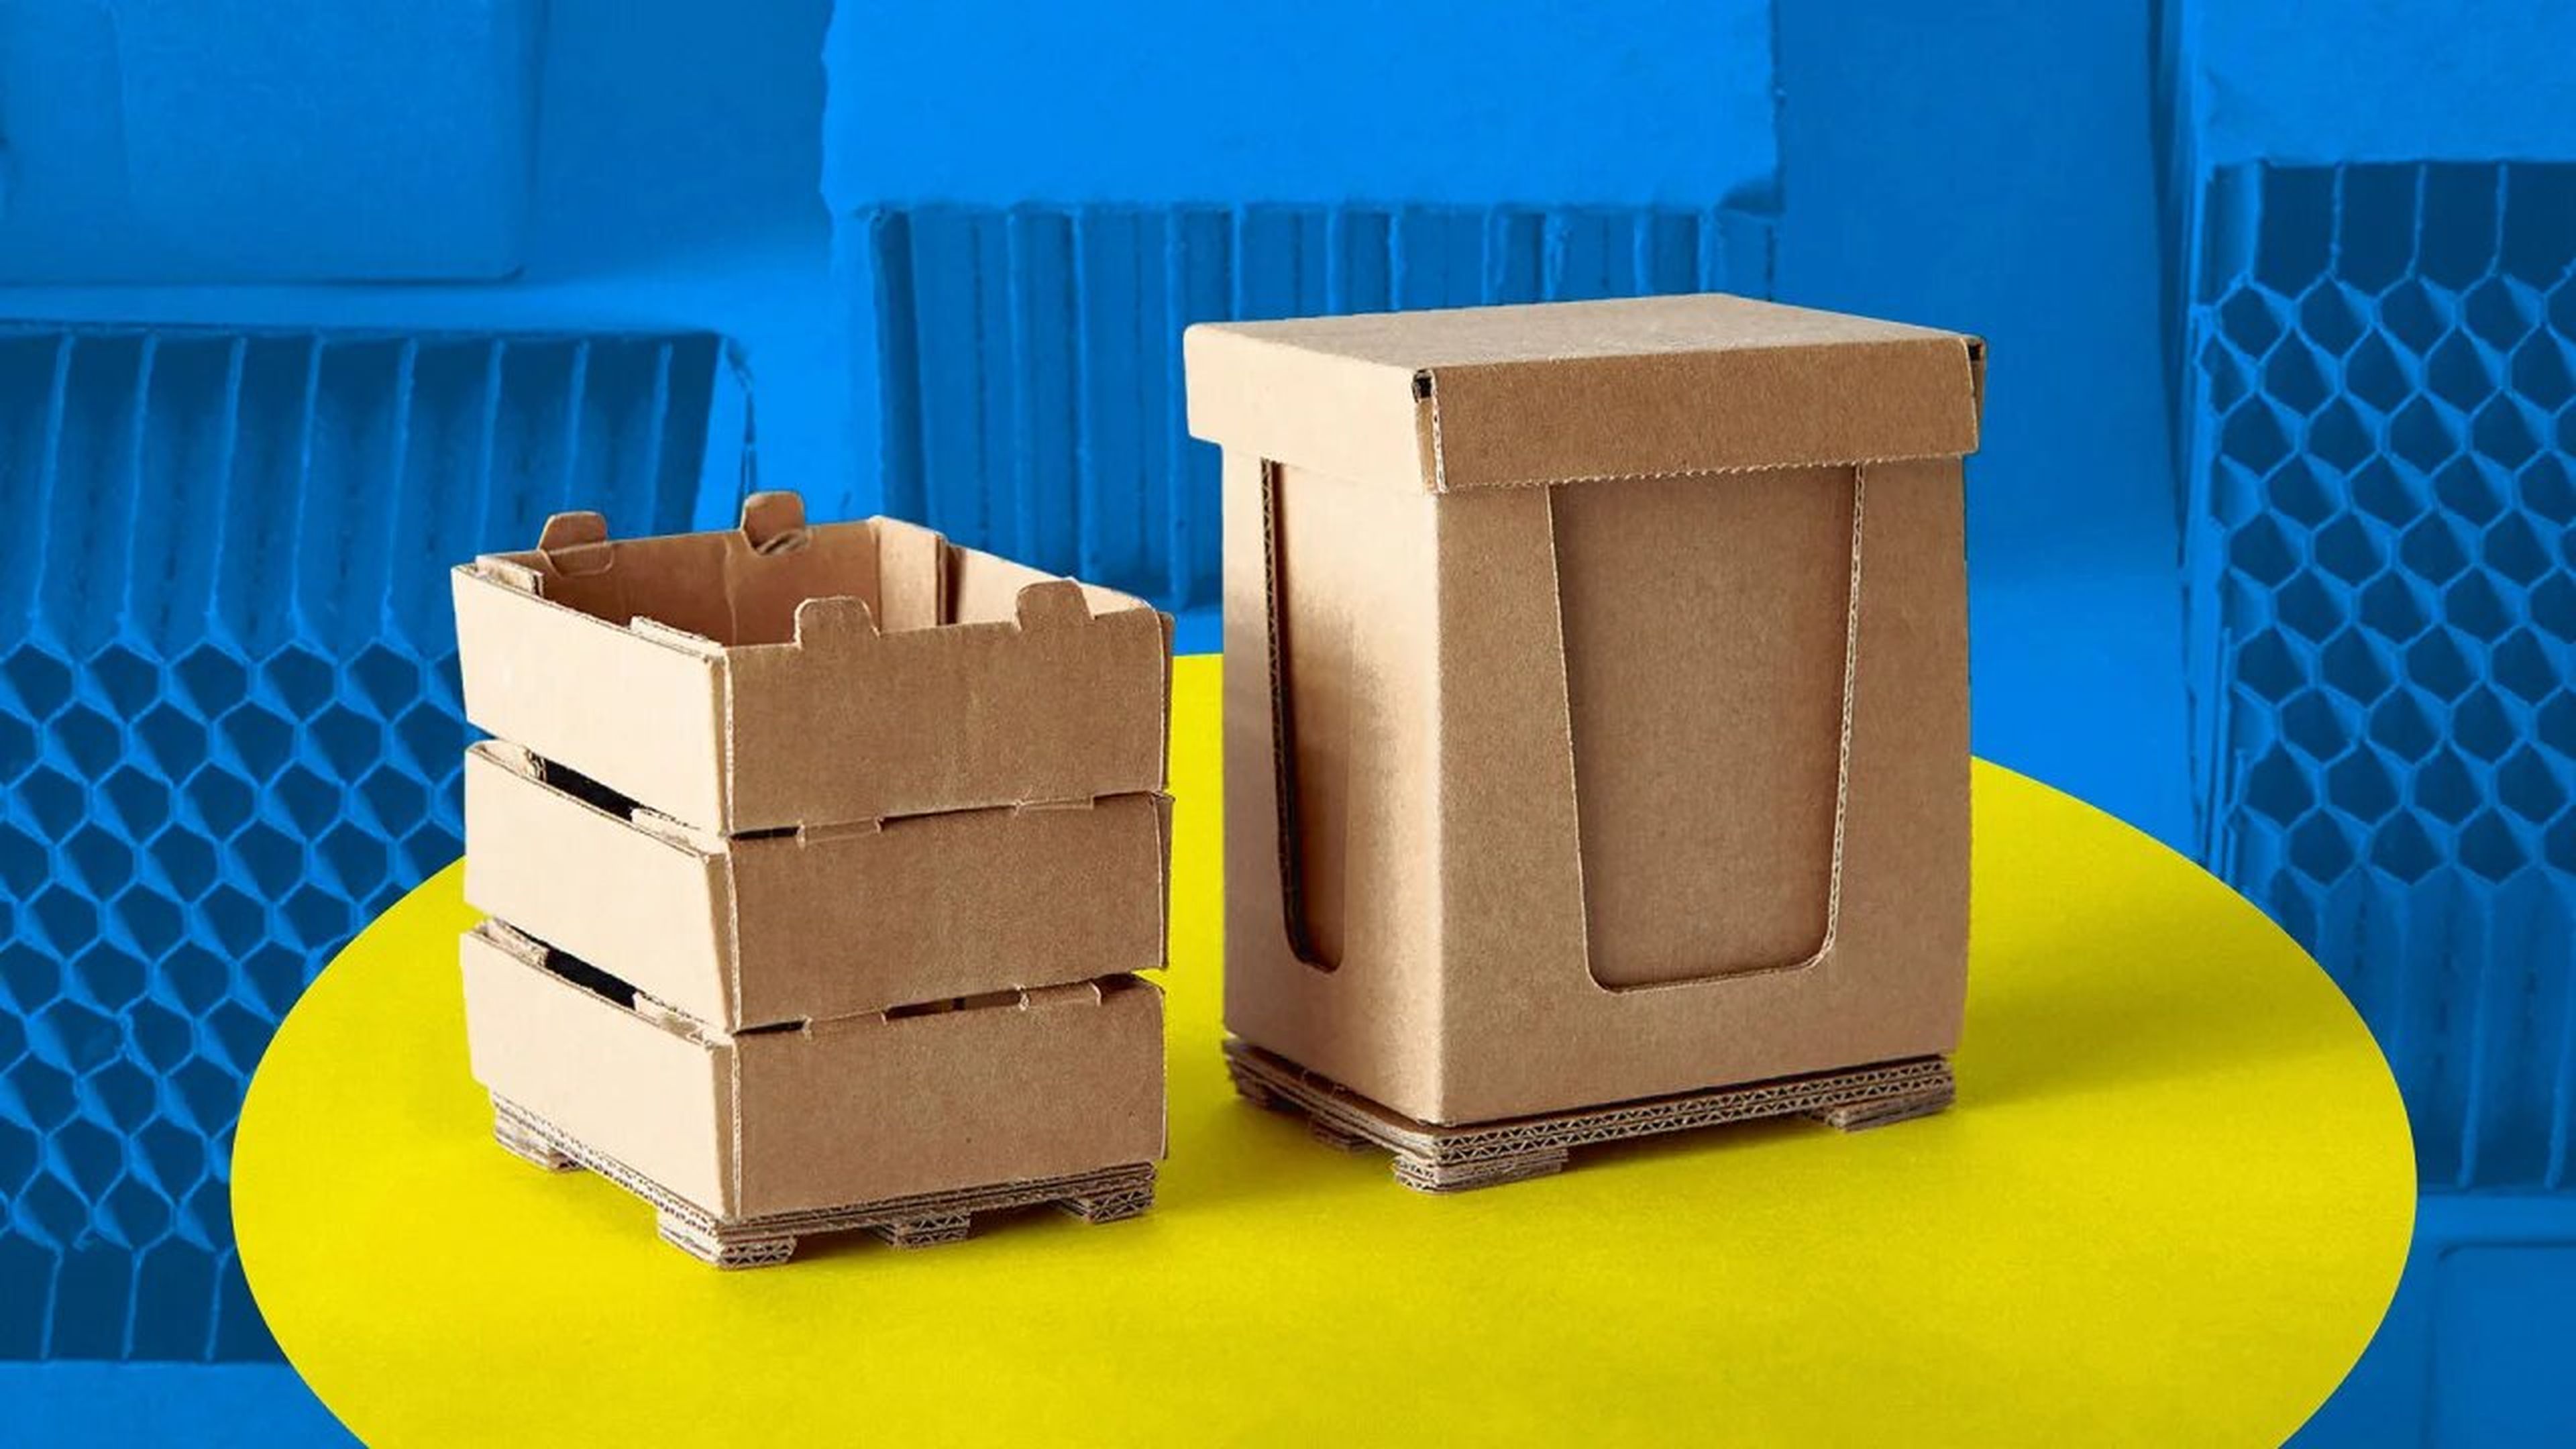 Ikea packaging